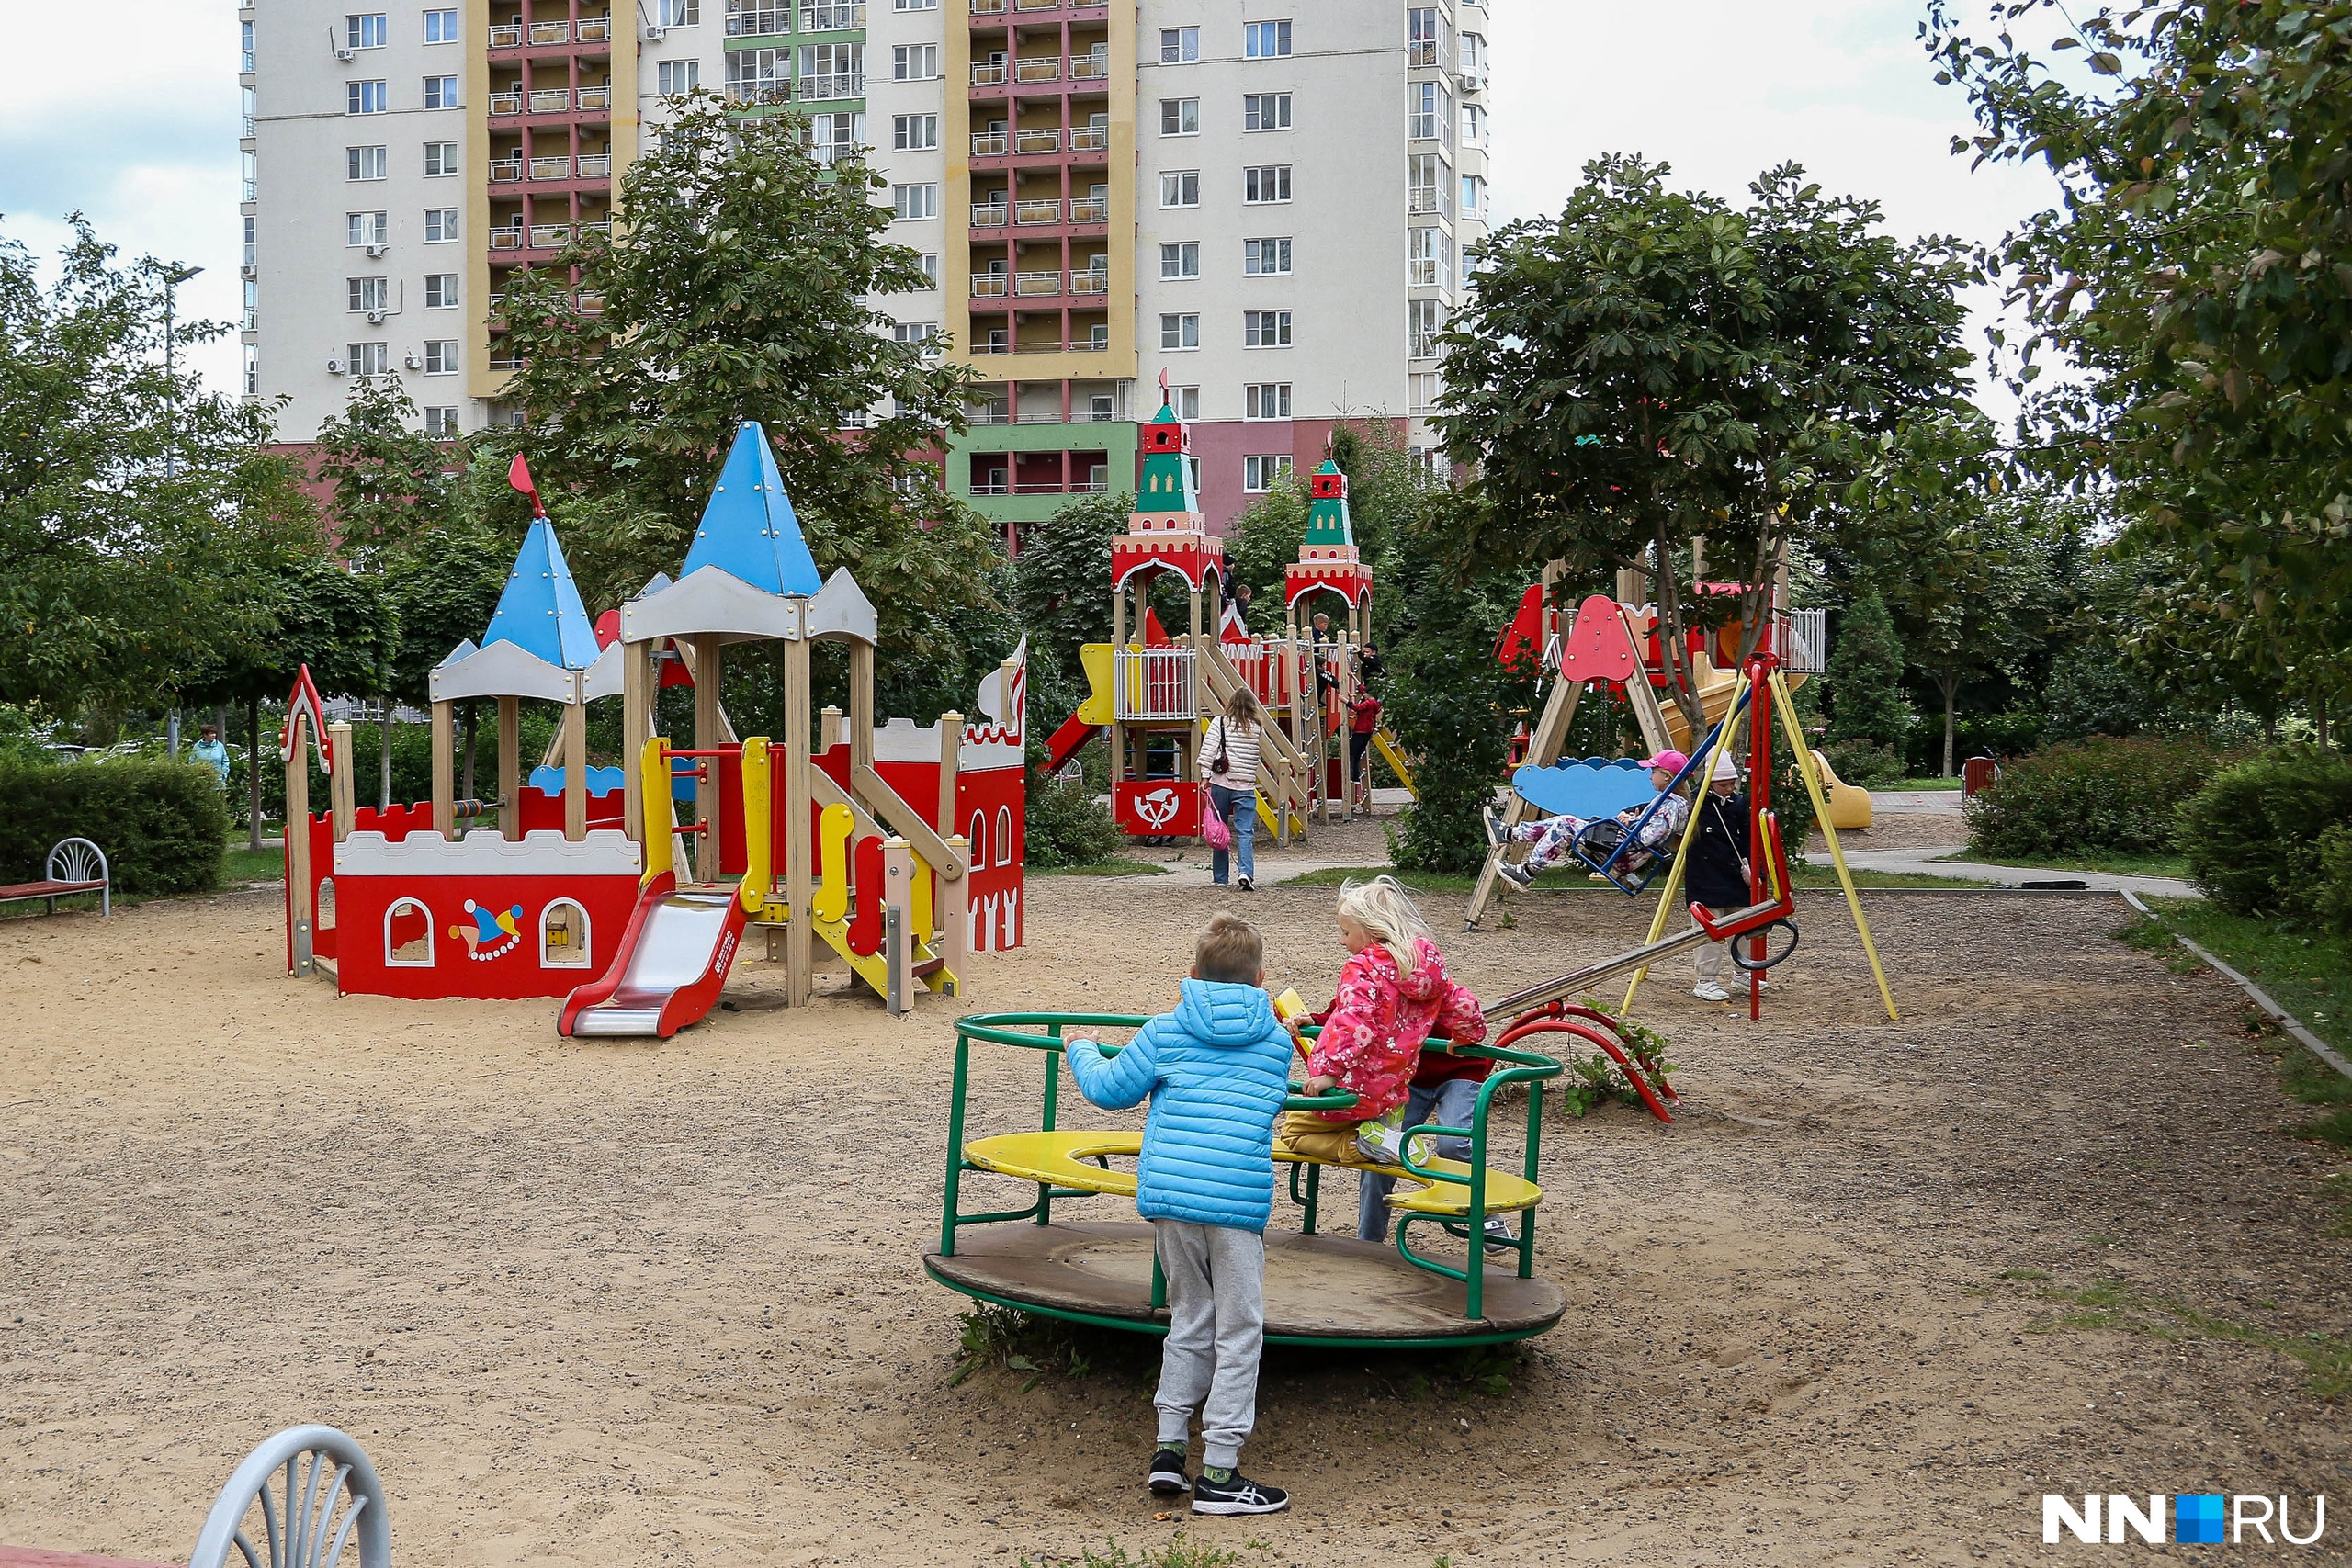 Аттракционы на детских площадках выглядят современными